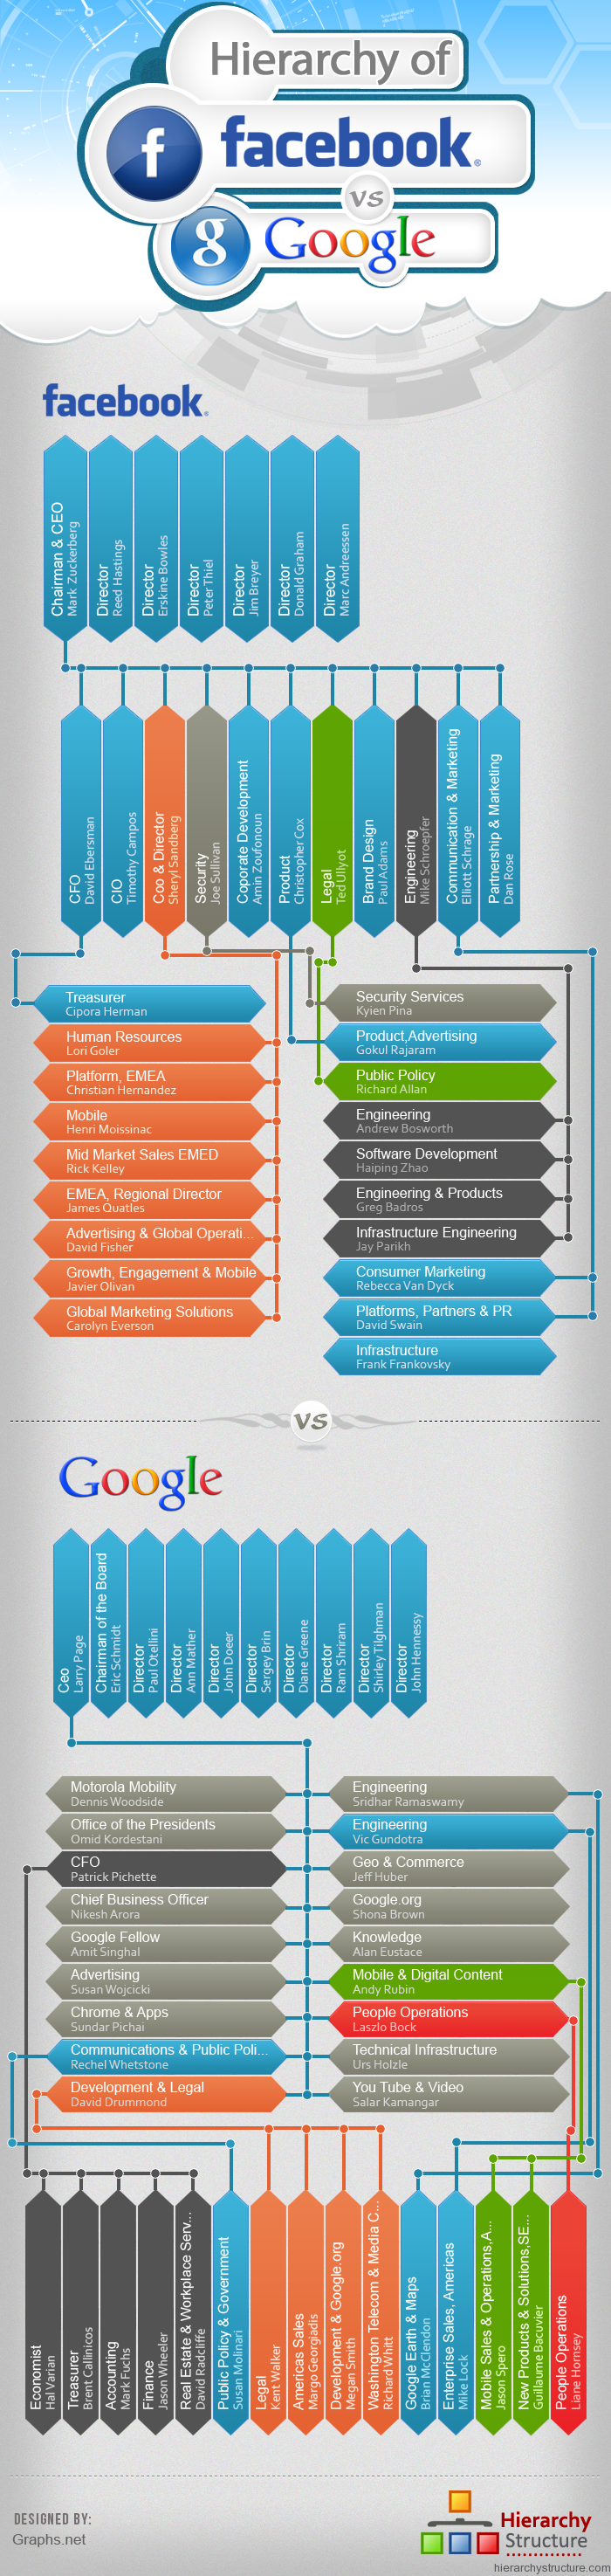 Hierarchy of facebook Vs Google